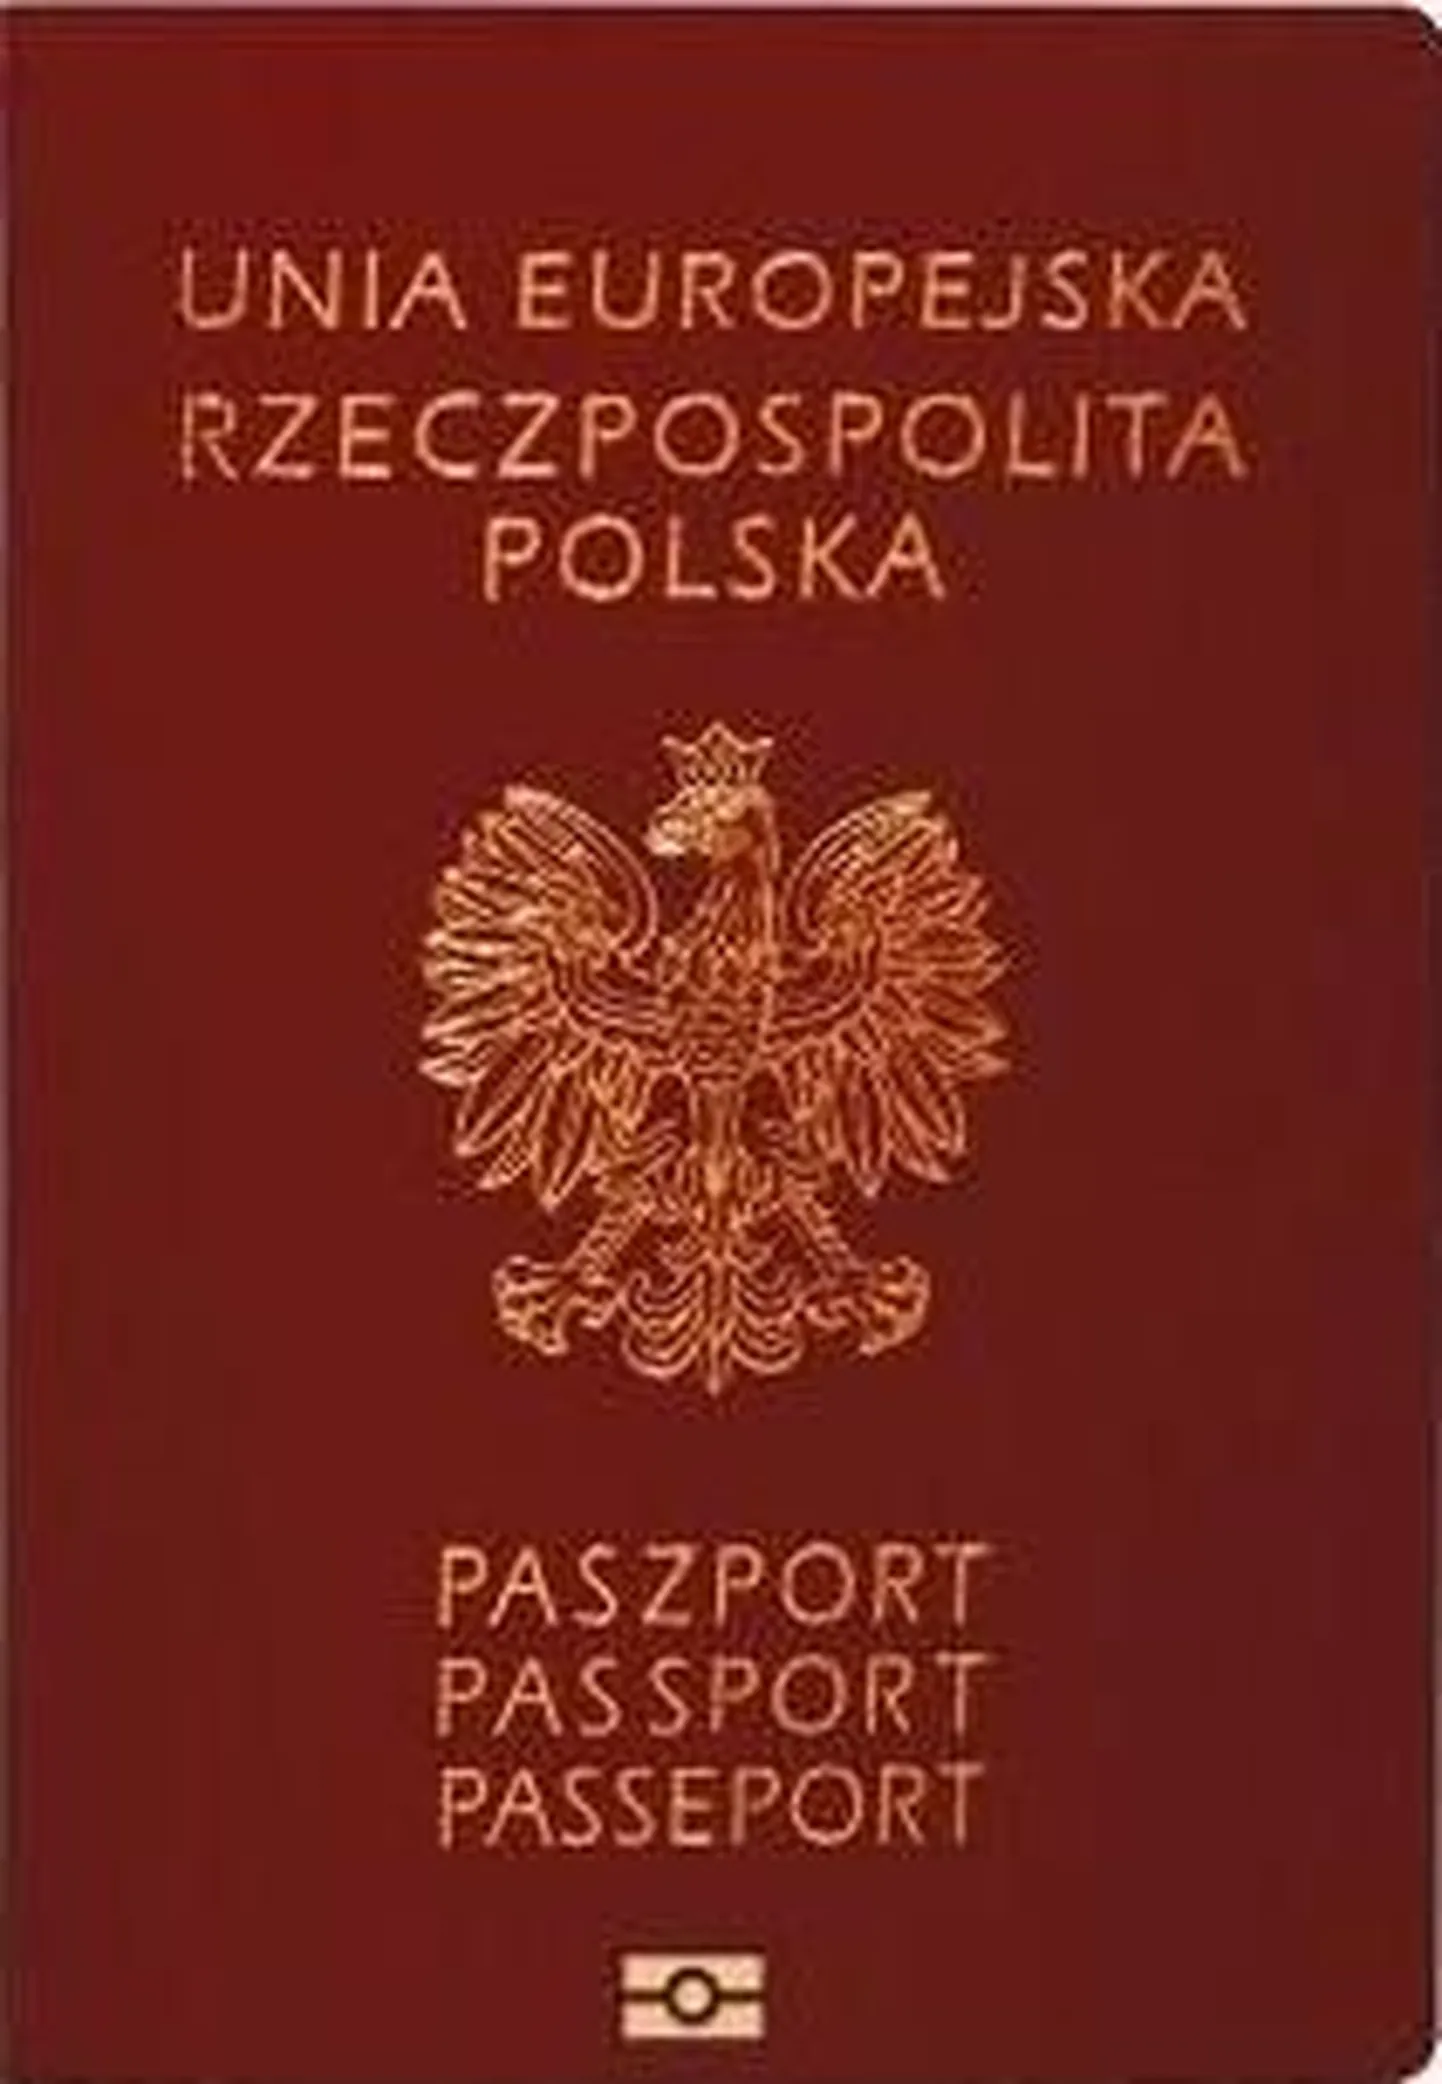 Обложка польского паспорта.